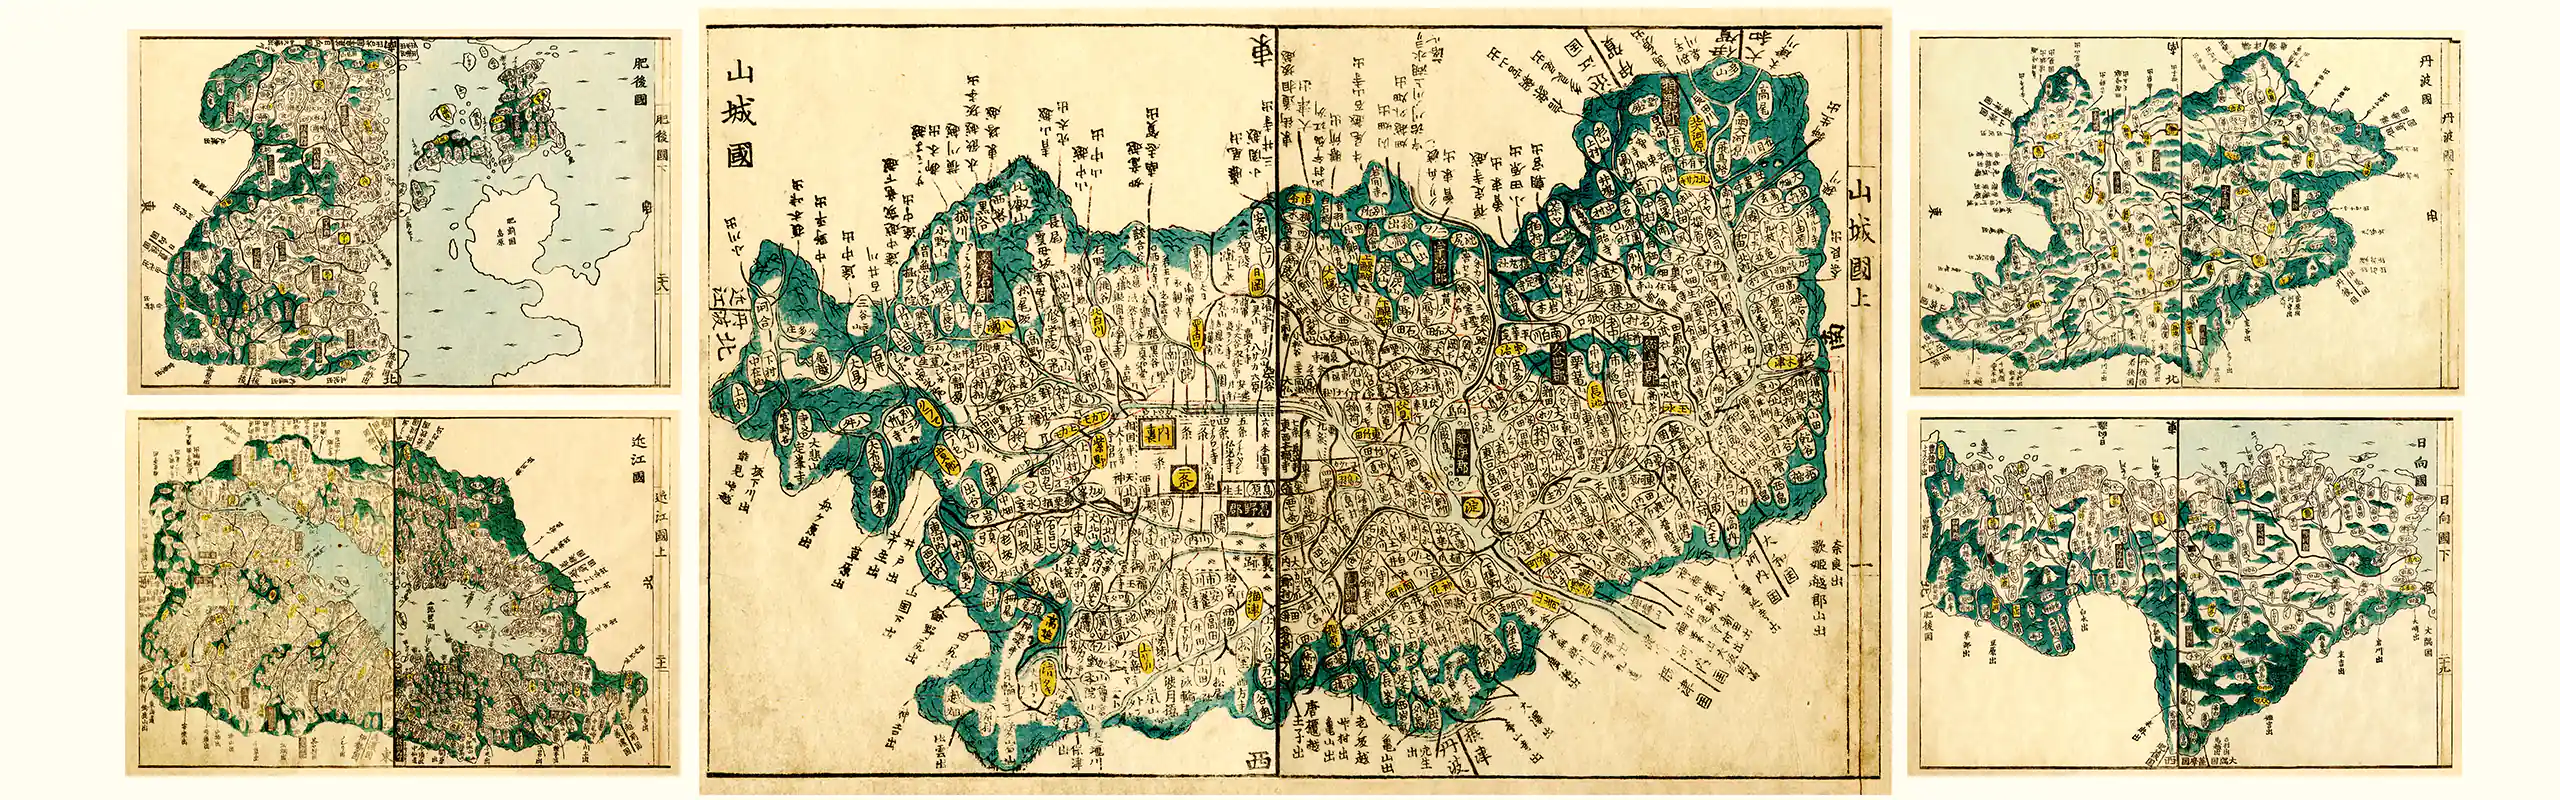 Kokugun map - Tenpo 8 (1837)